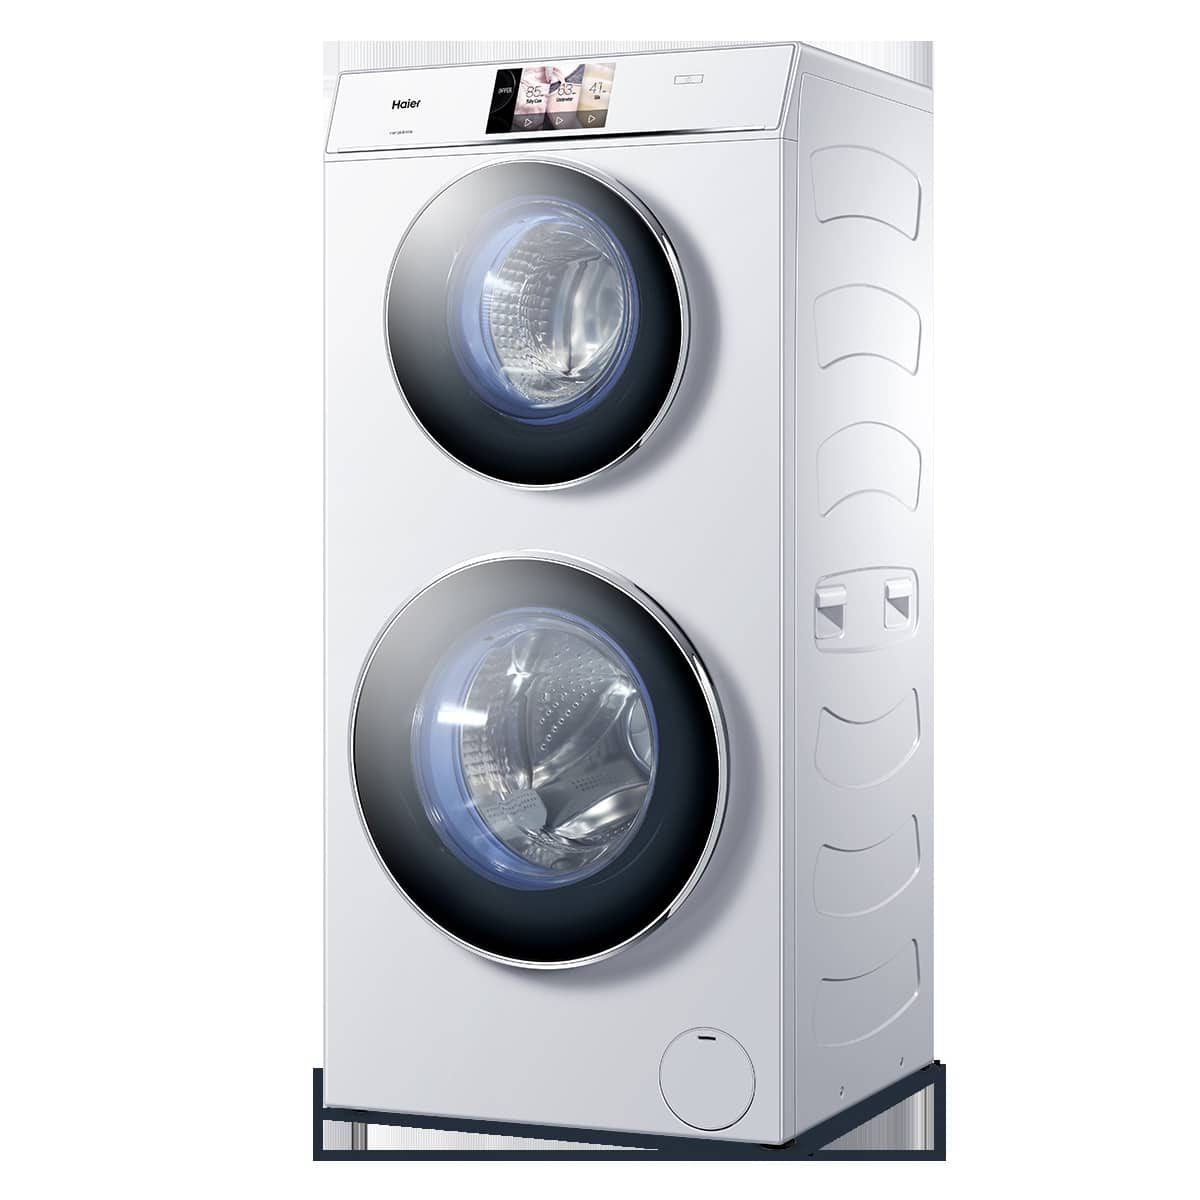 Haier Duo Waschmaschine: Wenn die Kinder plötzlich selbst die Wäsche machen wollen